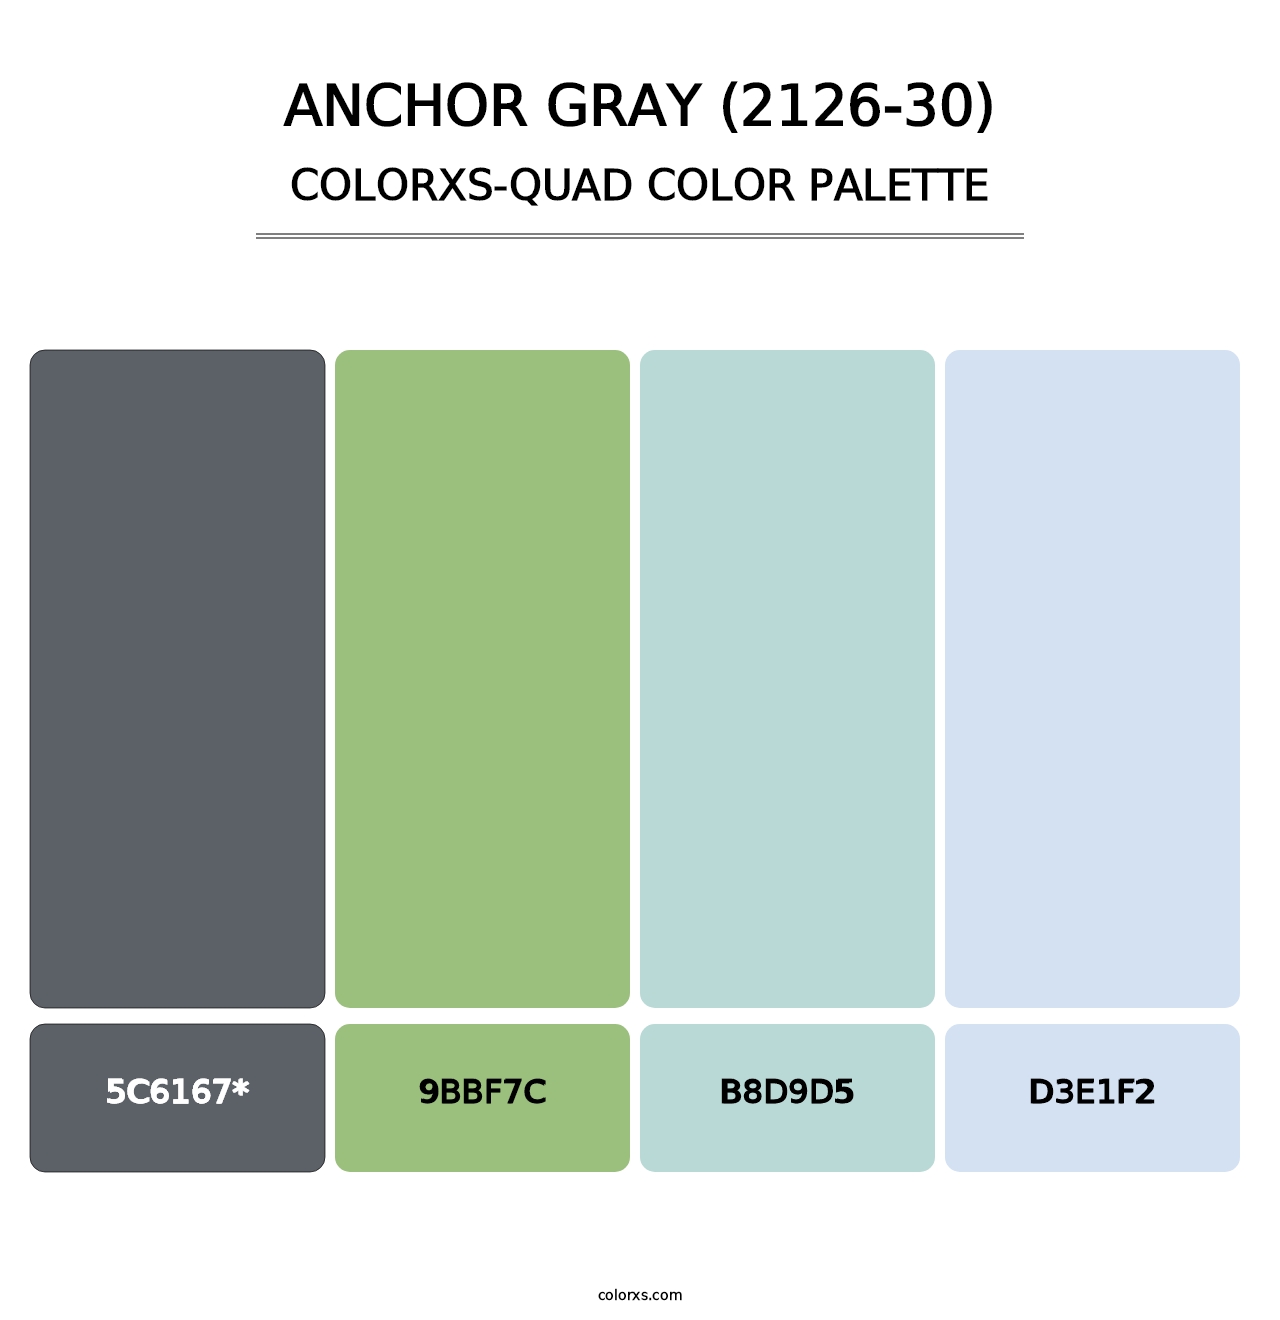 Anchor Gray (2126-30) - Colorxs Quad Palette